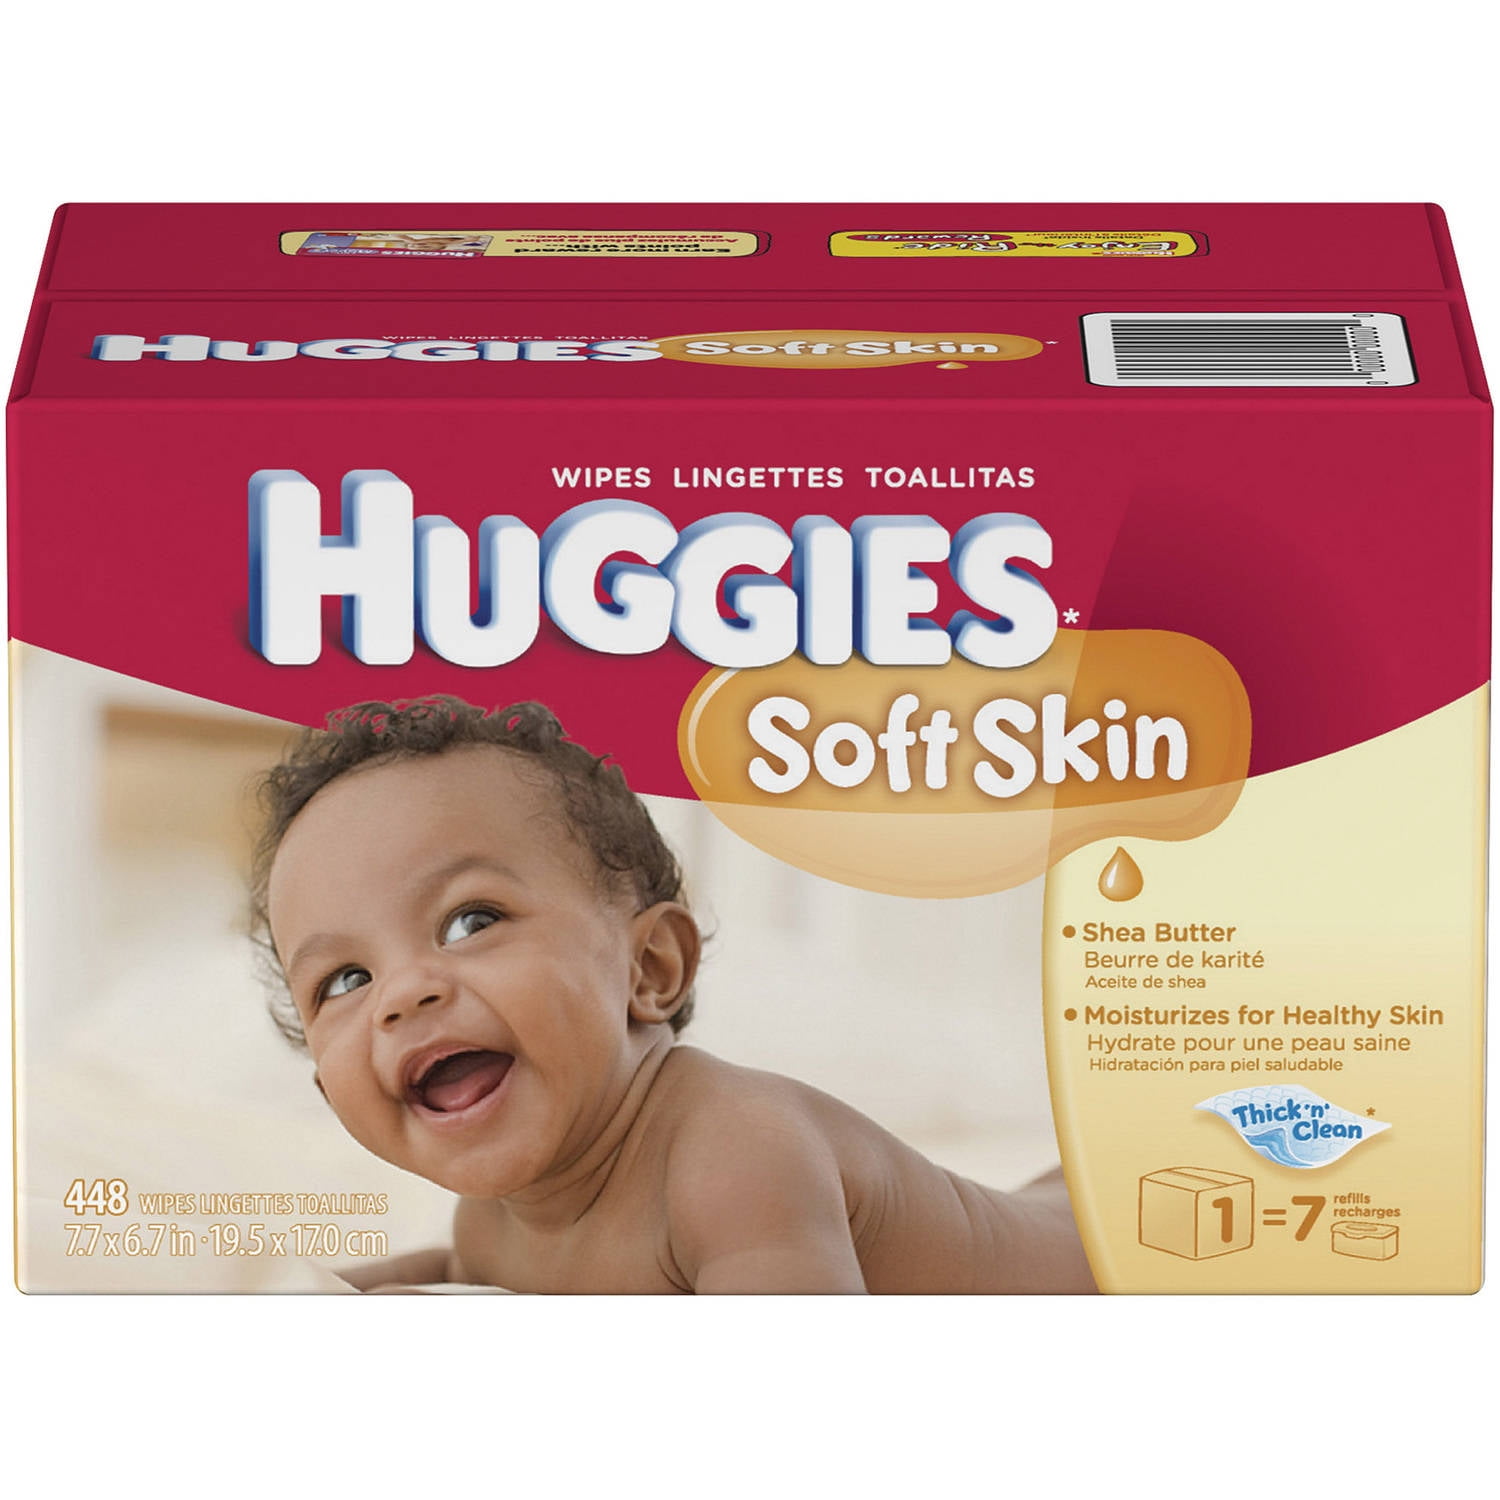 HUGGIES Soft Skin Shea Butter Baby Wipes, 448 sheets - Walmart.com ...